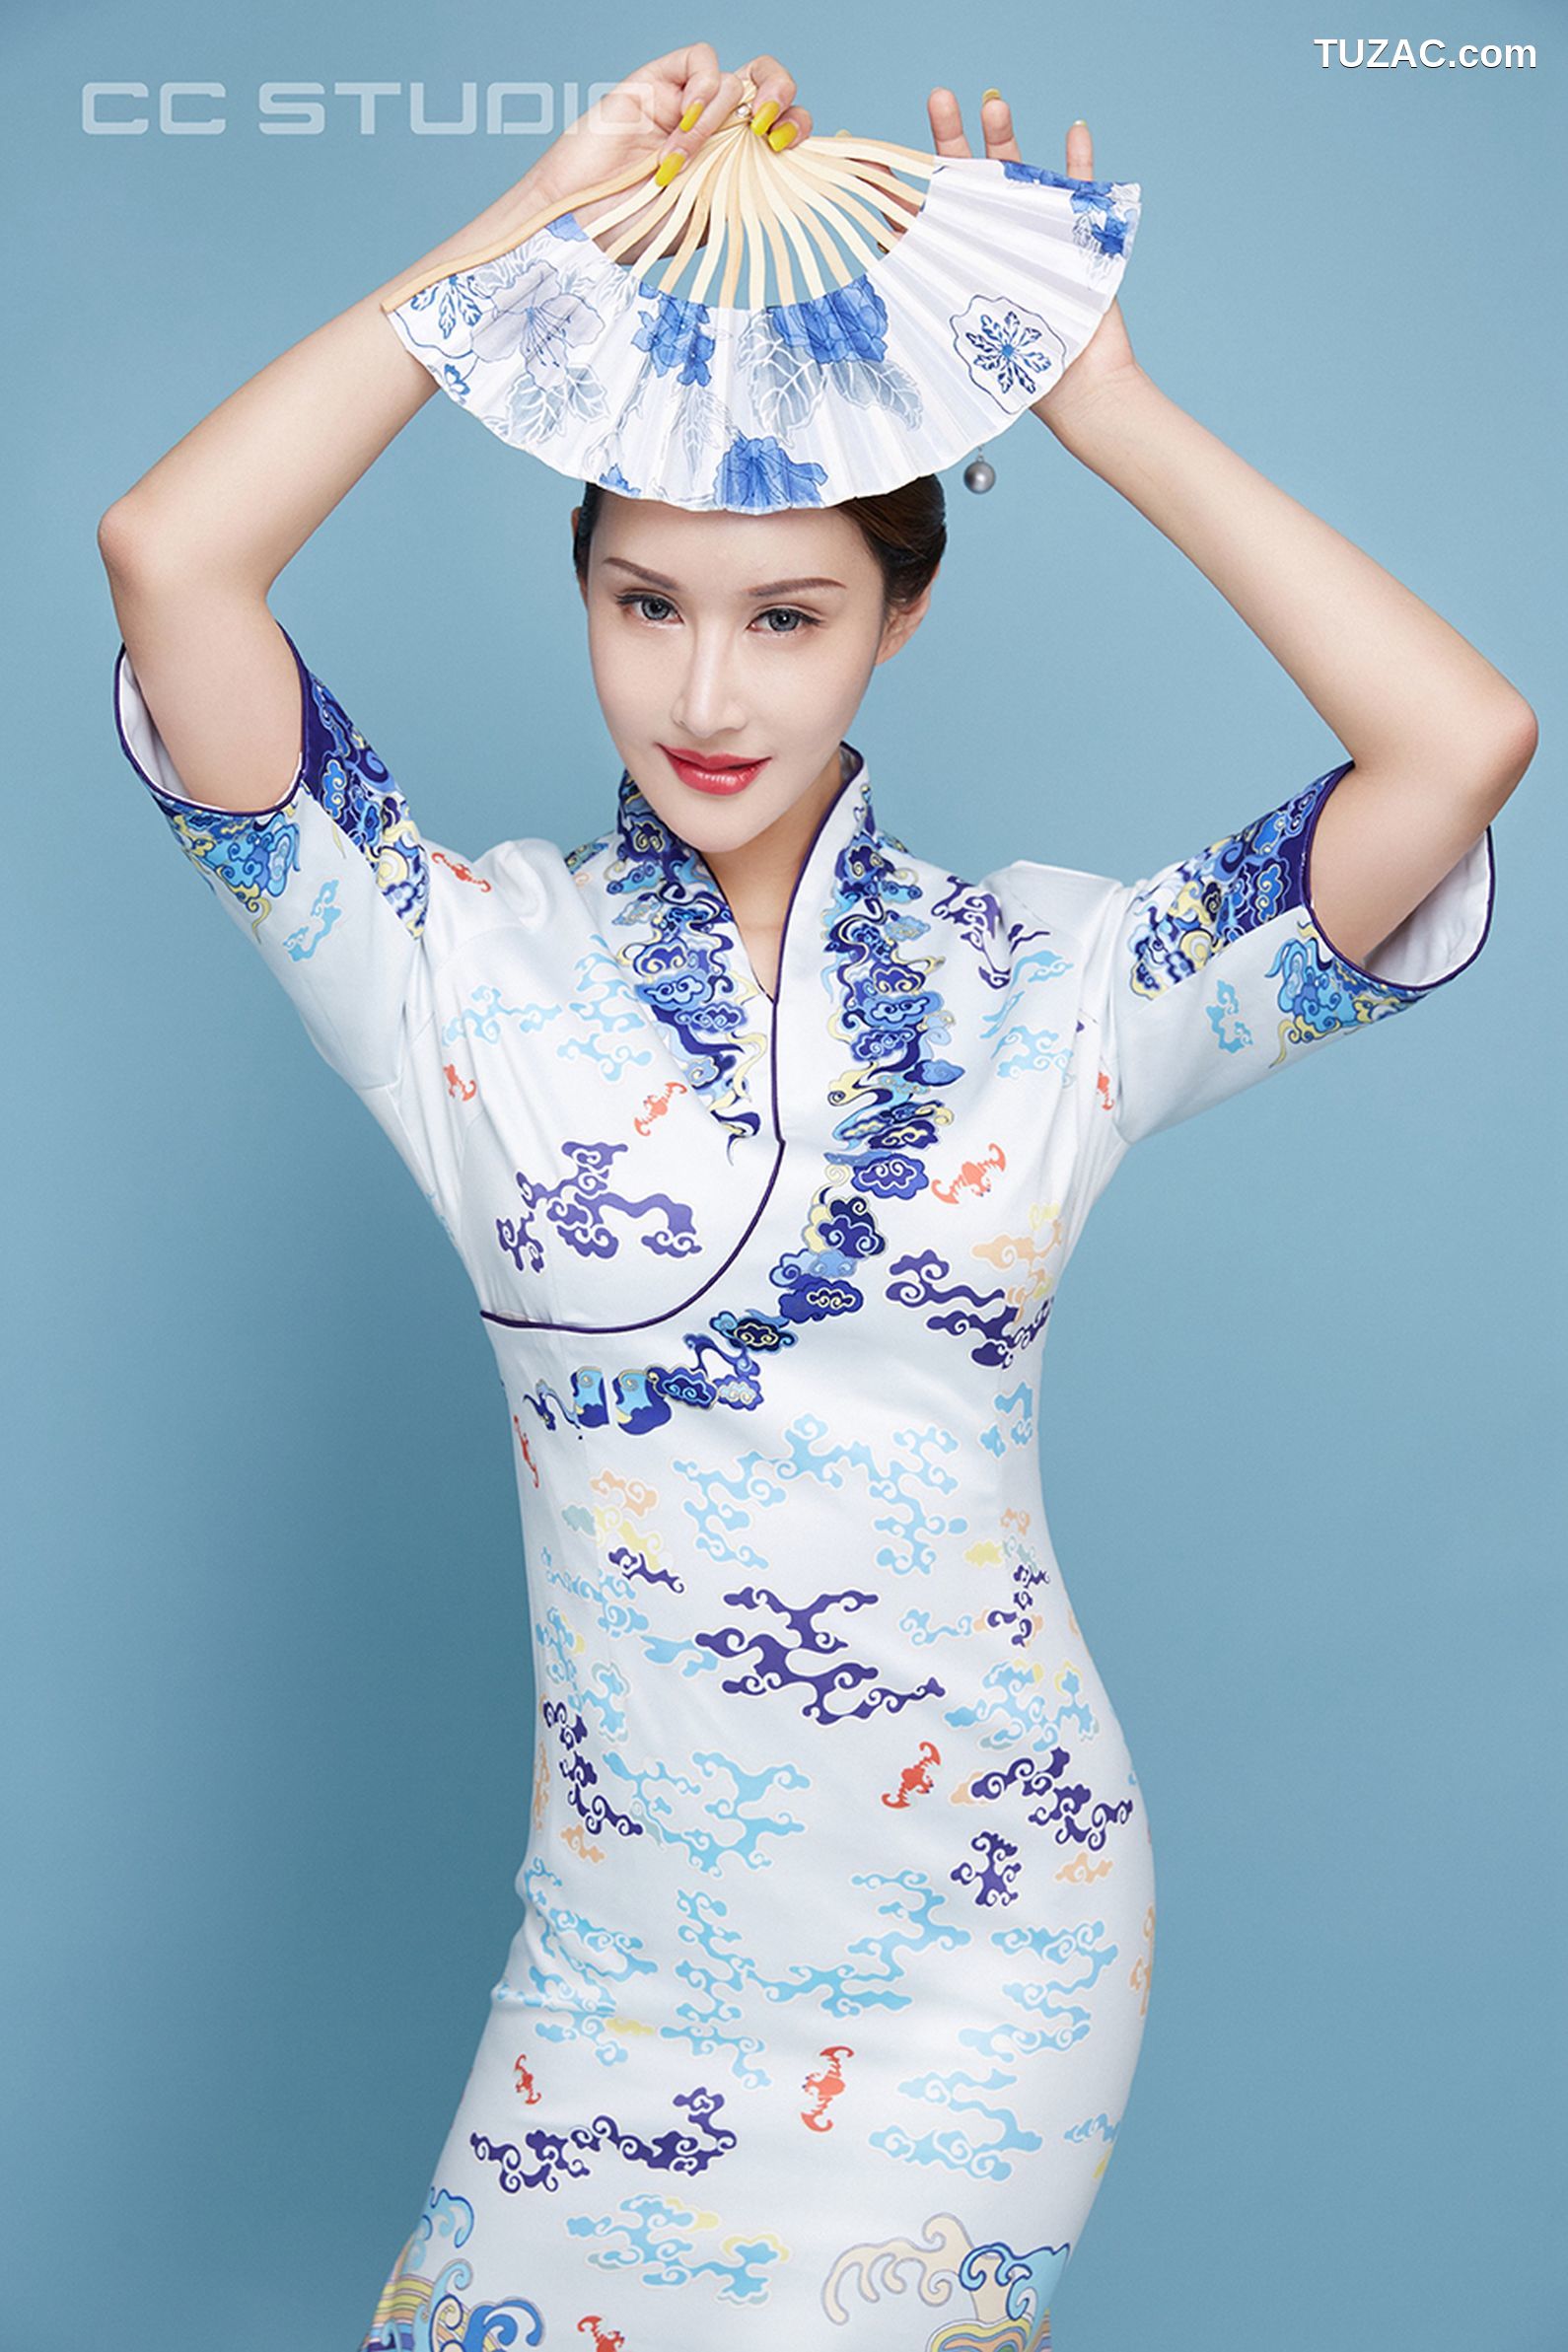 TouTiao头条女神-2019.05.12-曼苏拉娜-《小时候的梦想是做一名空姐》